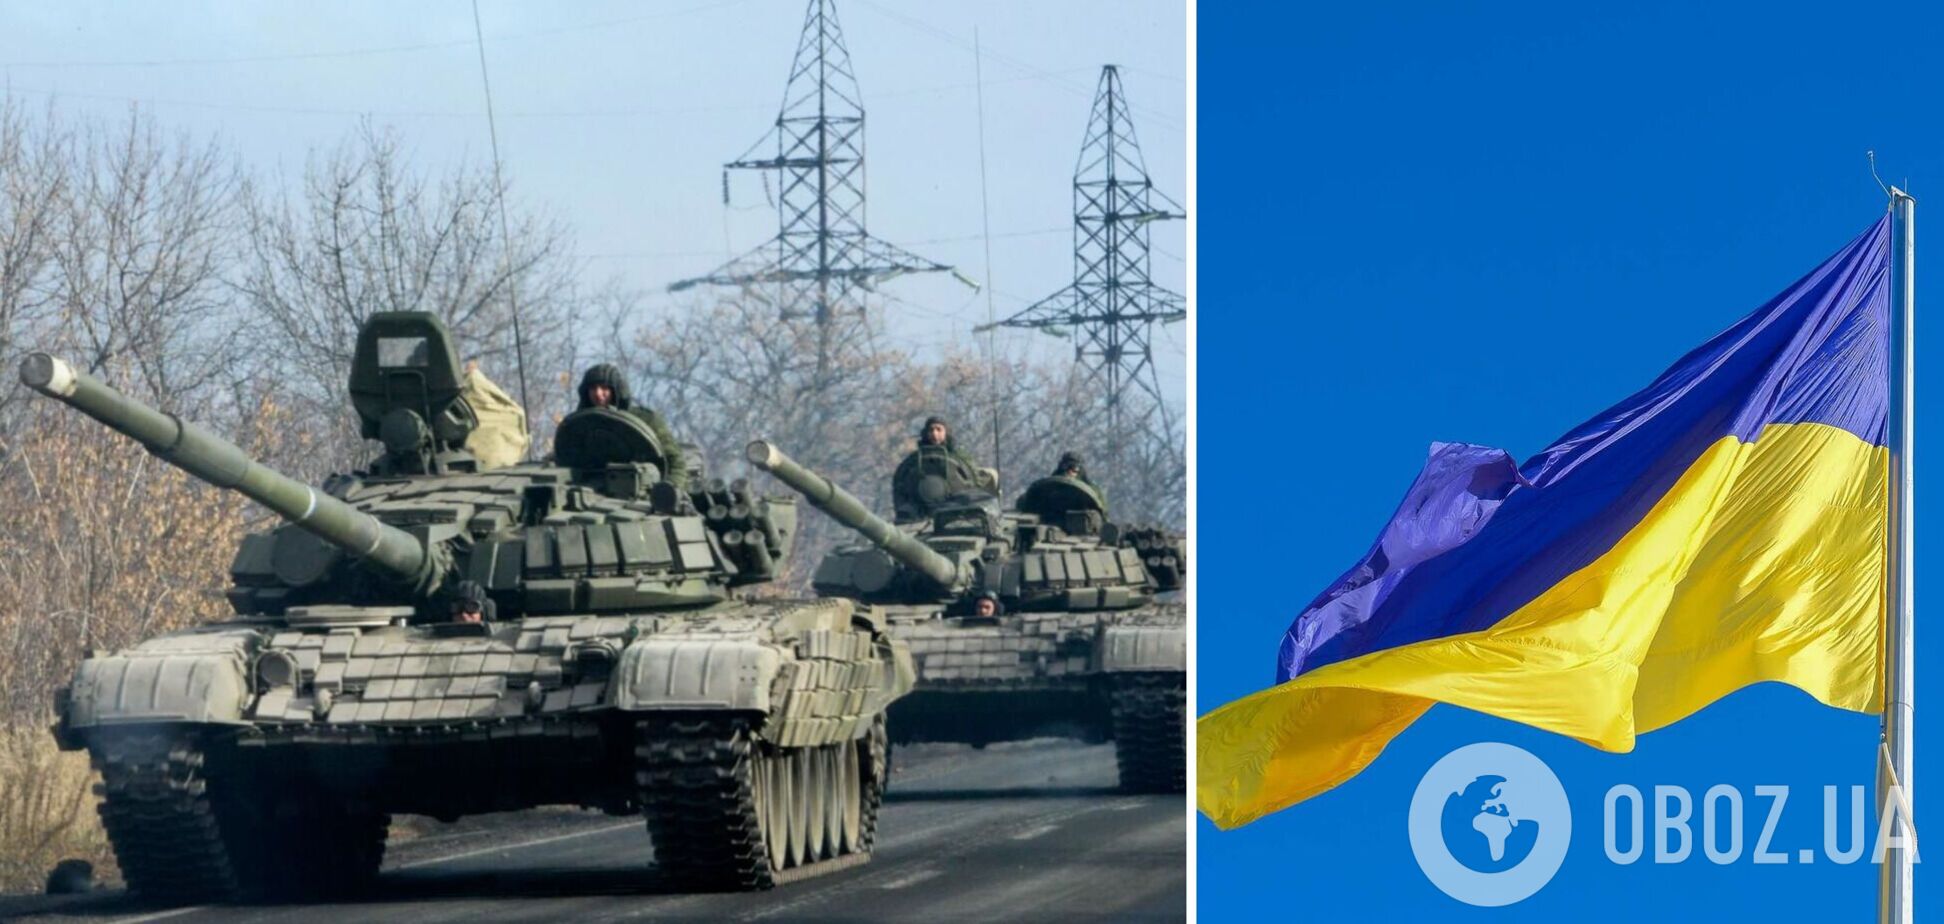 Російські окупанти використовують українські прапори, щоб ввести всіх в оману, а потім відкривають вогонь – МВС